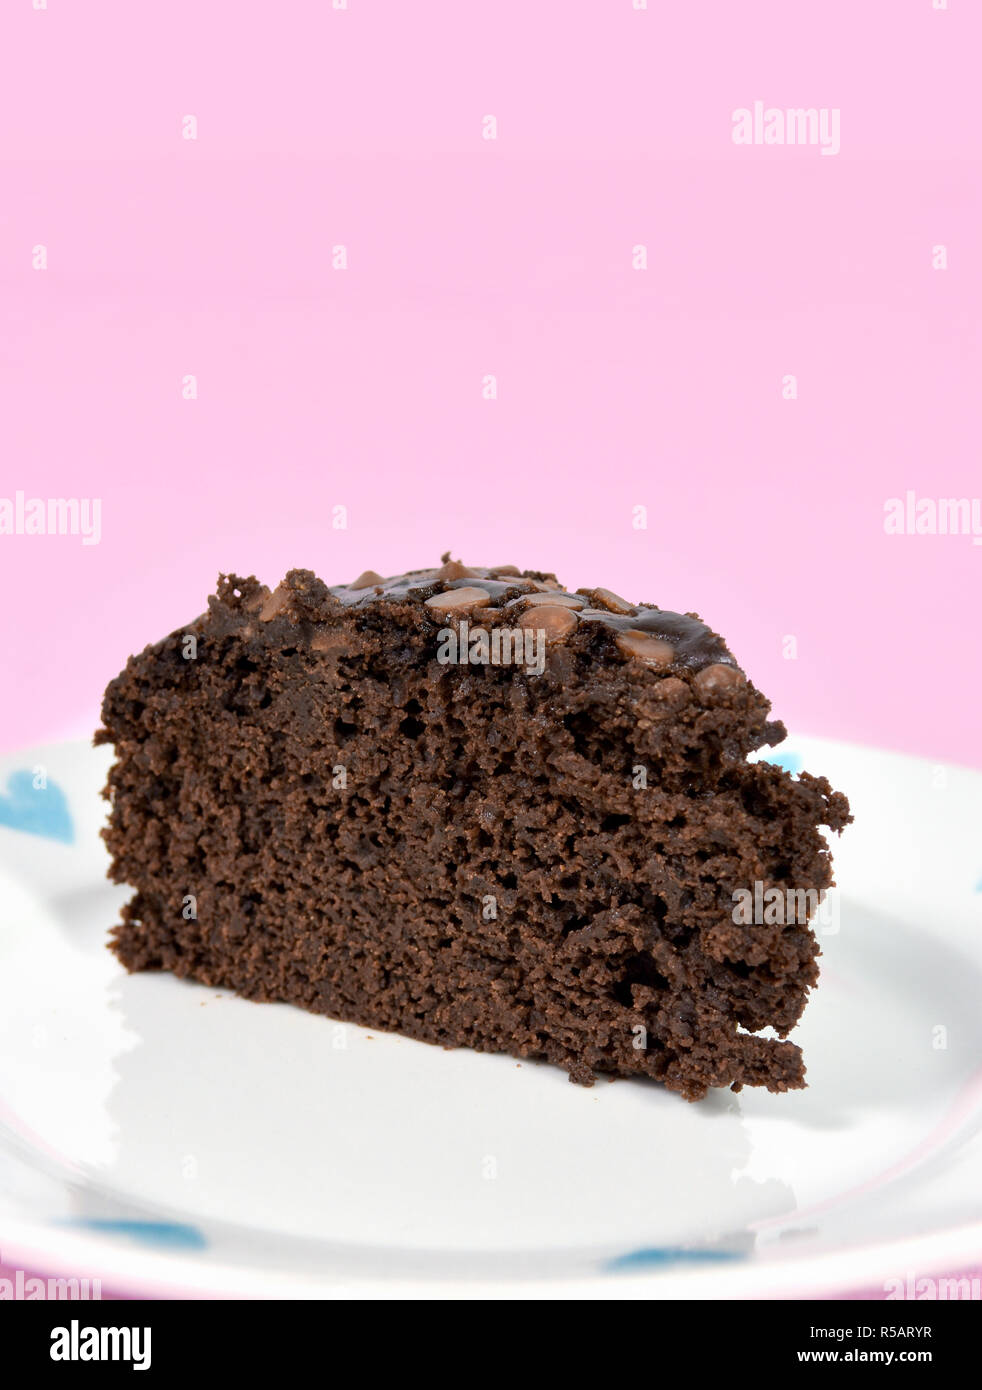 Moist Schokolade Kuchen auf ziemlich Platte ohne Eier und mit Pflanzenöl statt Butter gemacht. Vor einem rosa Hintergrund. Stockfoto